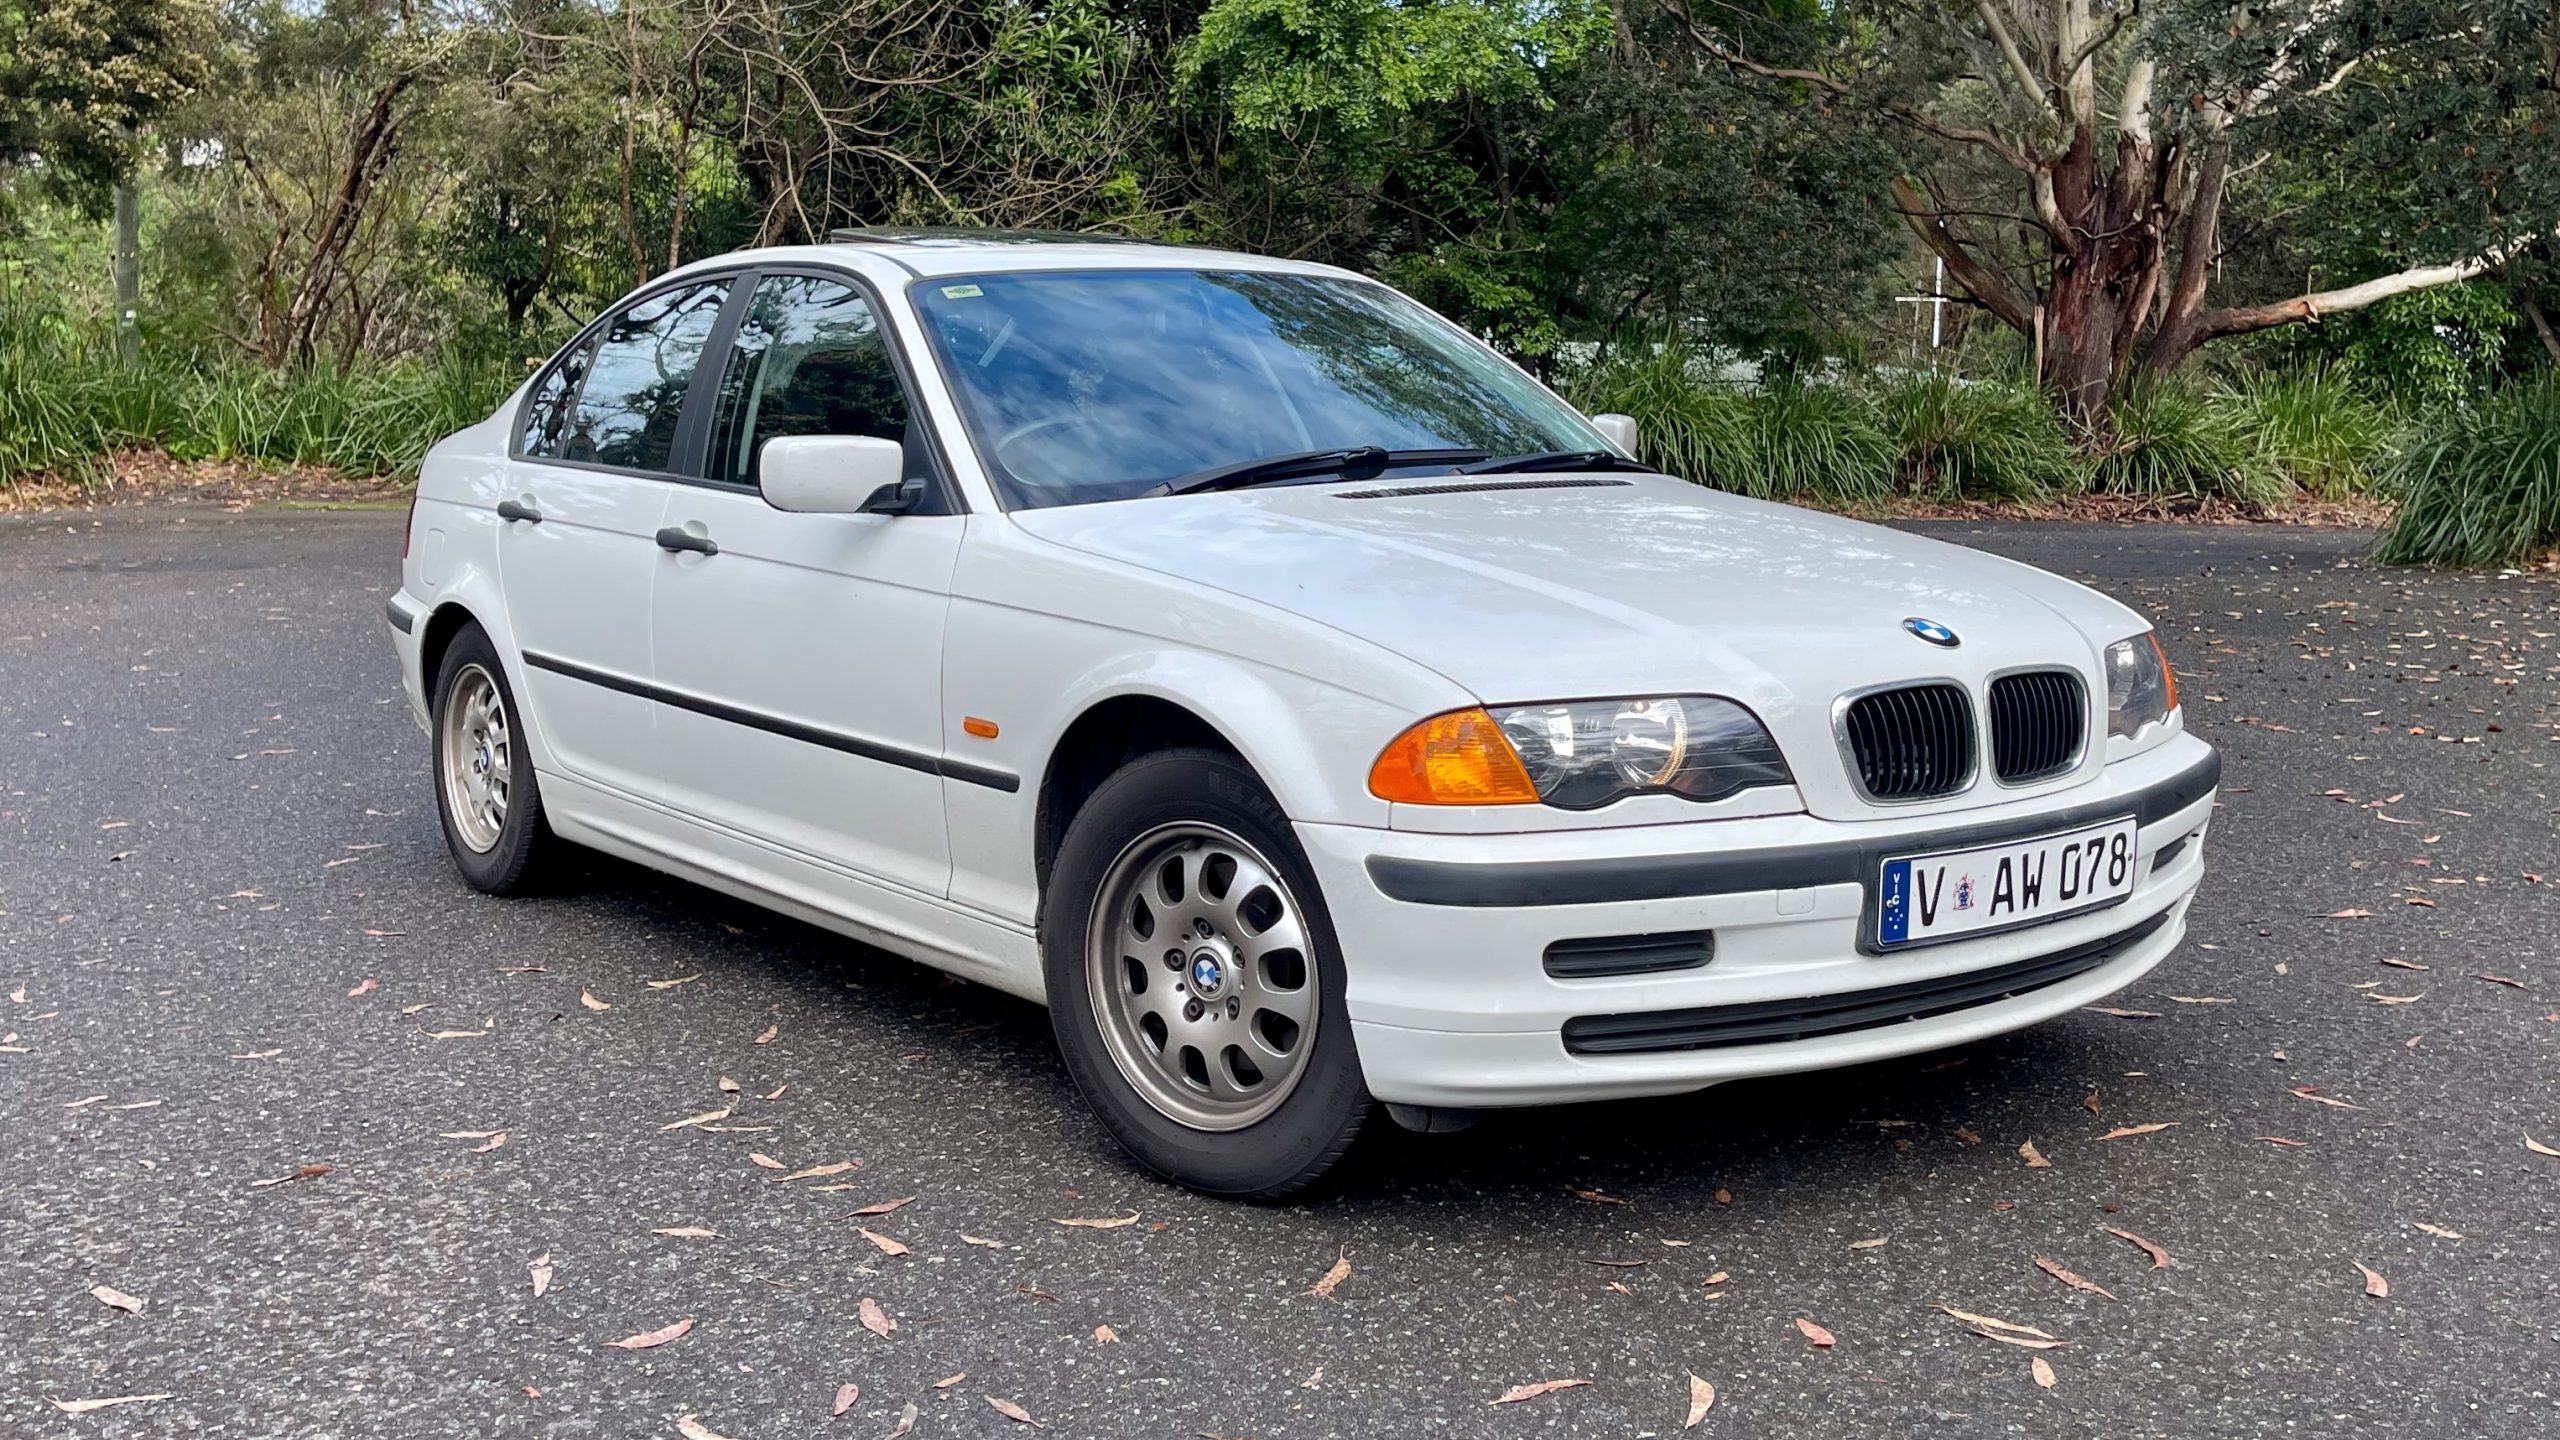 1999 BMW 318i E46 Sedan Used Car Review | DiscoverAuto